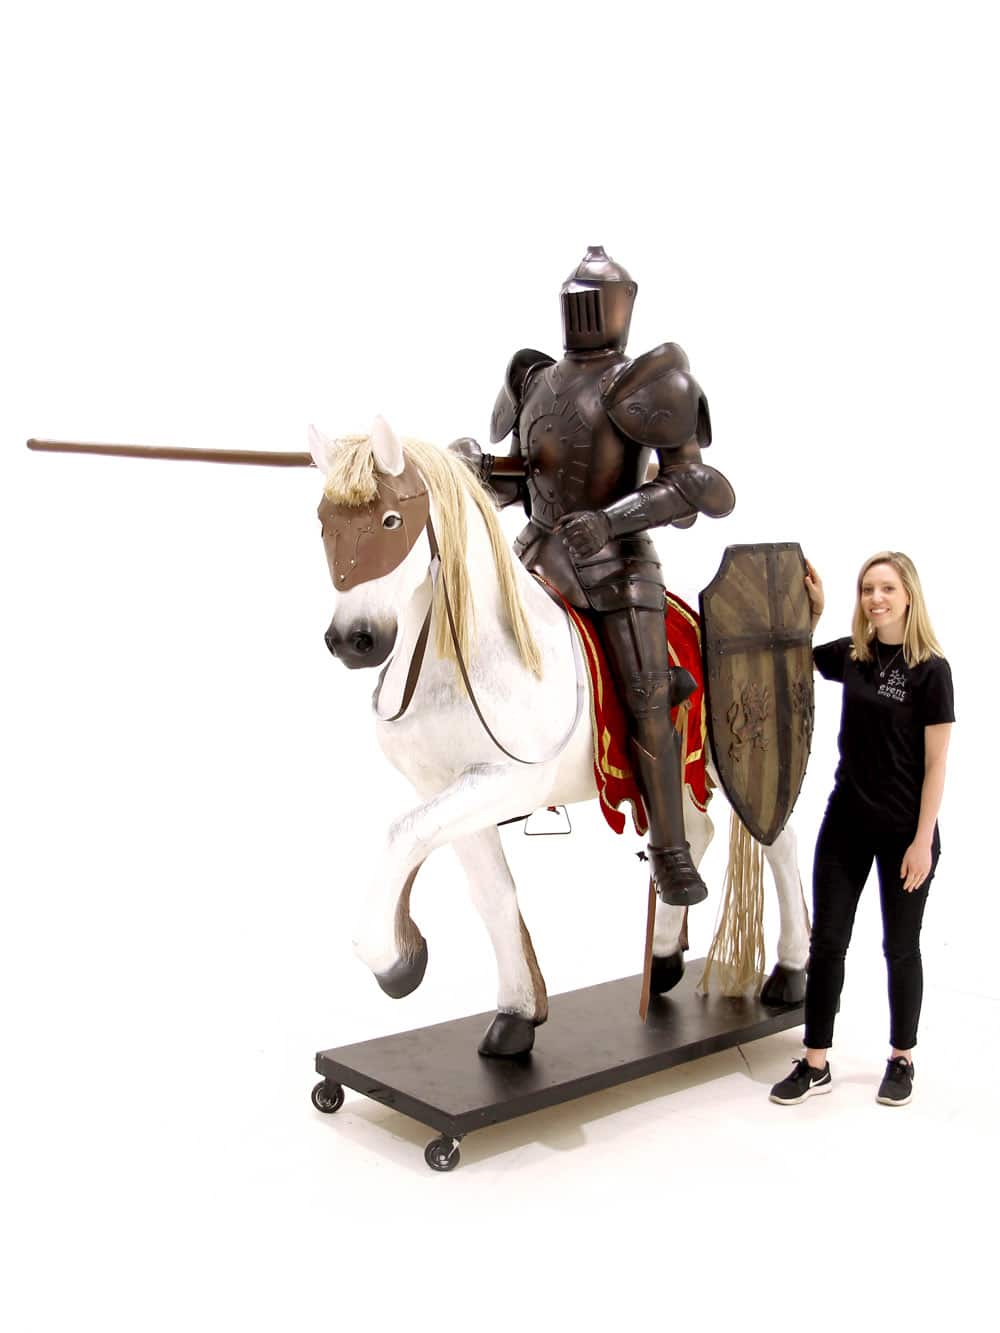 Life-size Knight on Horseback